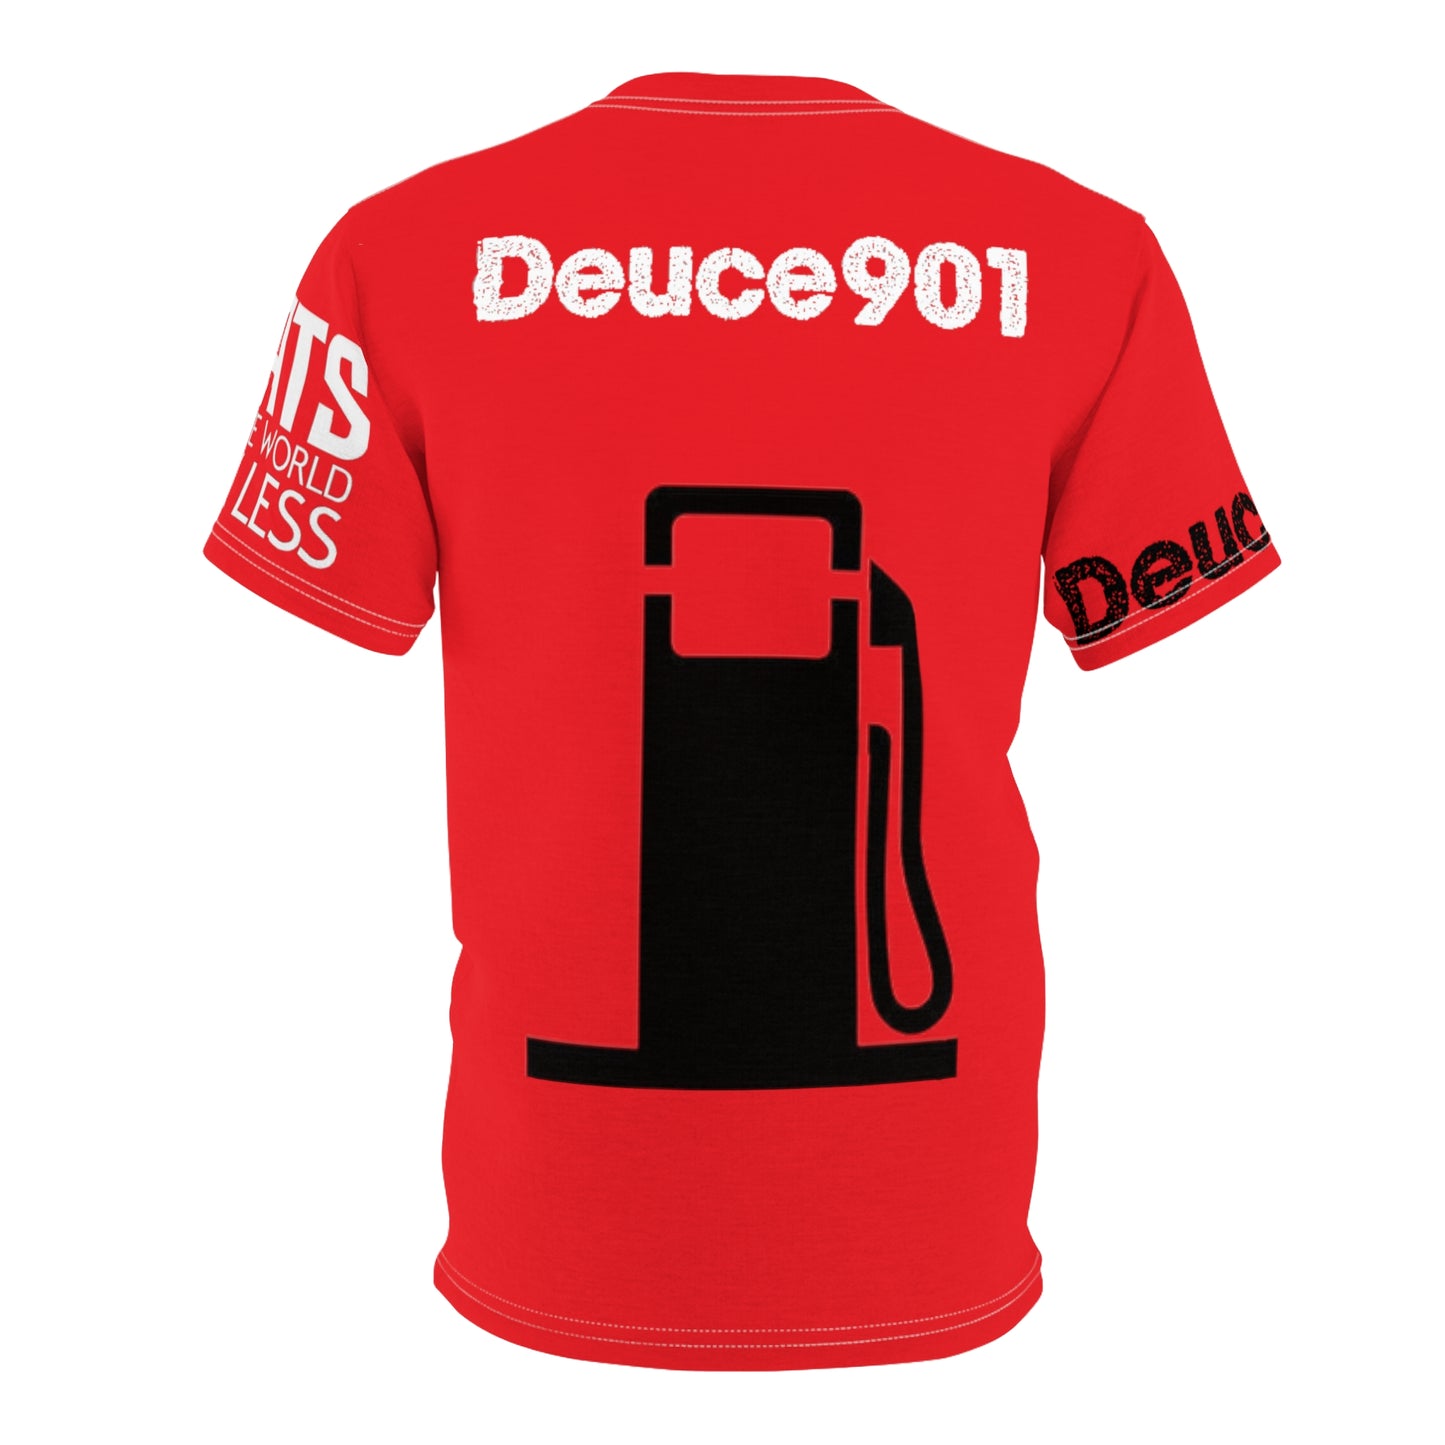 Deuce 901 Cut & Sew Tee